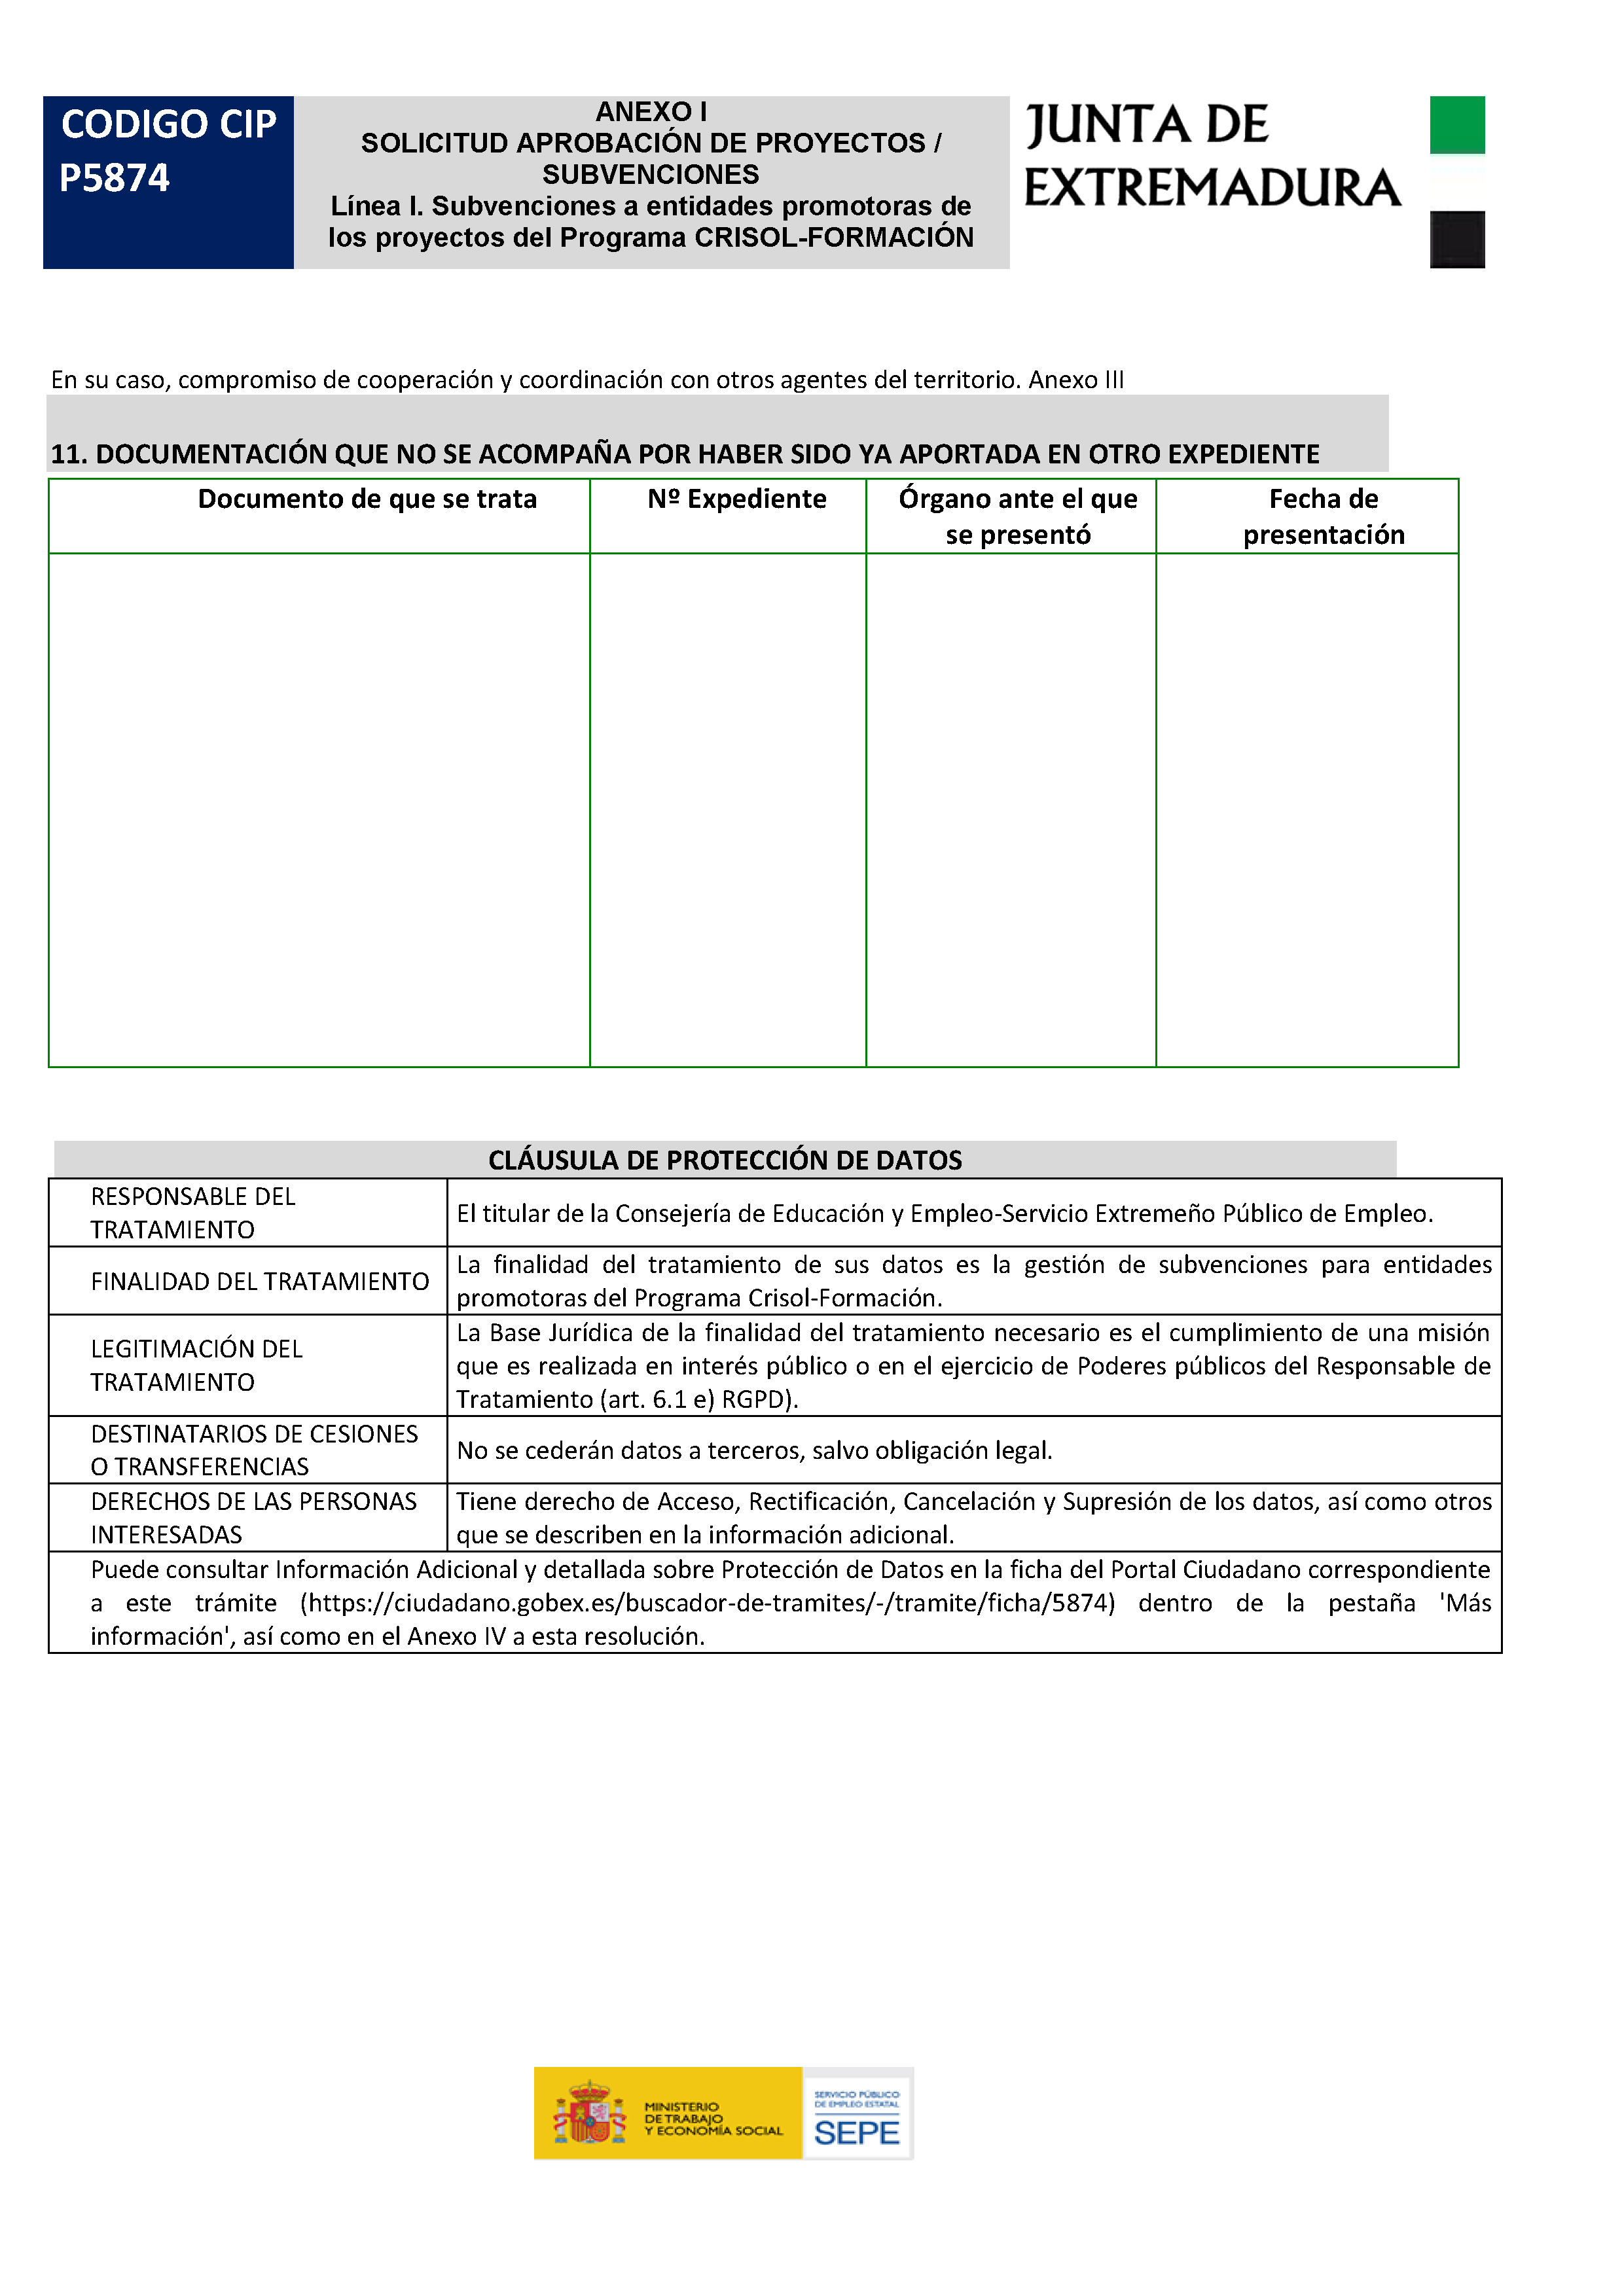 ANEXO SOLICITUD APROVACION DE PROYECTOS / SUBVENCIONES Pag 6